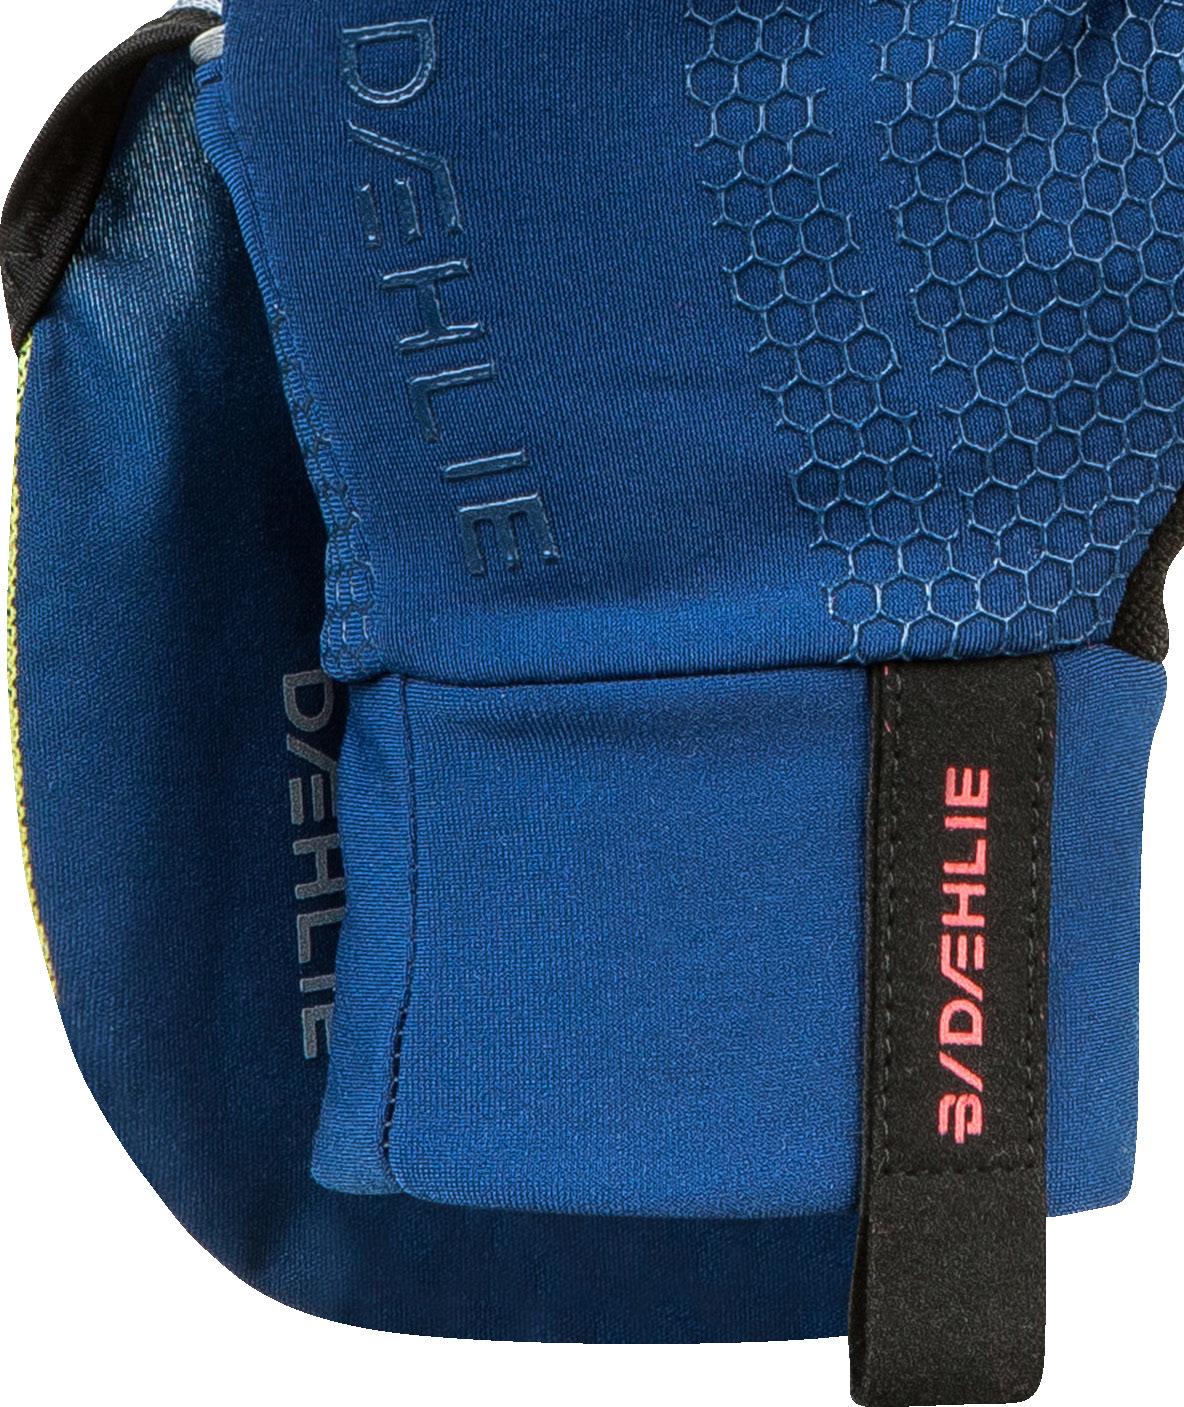 Перчатки Bjorn Daehlie Glove Rush Estate Blue